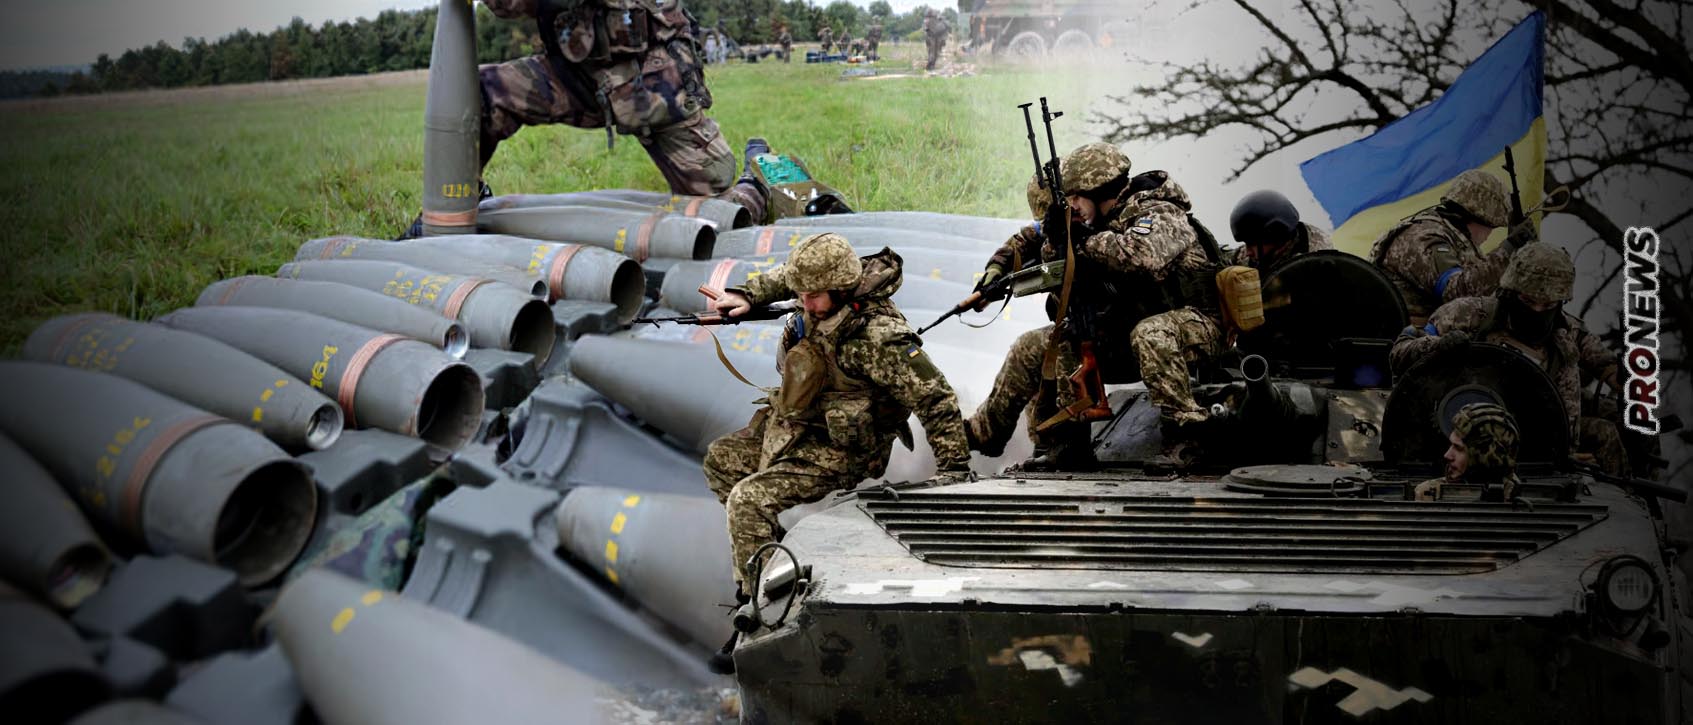 Δυτικοί αξιωματούχοι: «Ο ουκρανικός στρατός να ξεκινήσει πόλεμο ελιγμών γιατί δεν αρκούν τα πυρομαχικά πυροβολικού»